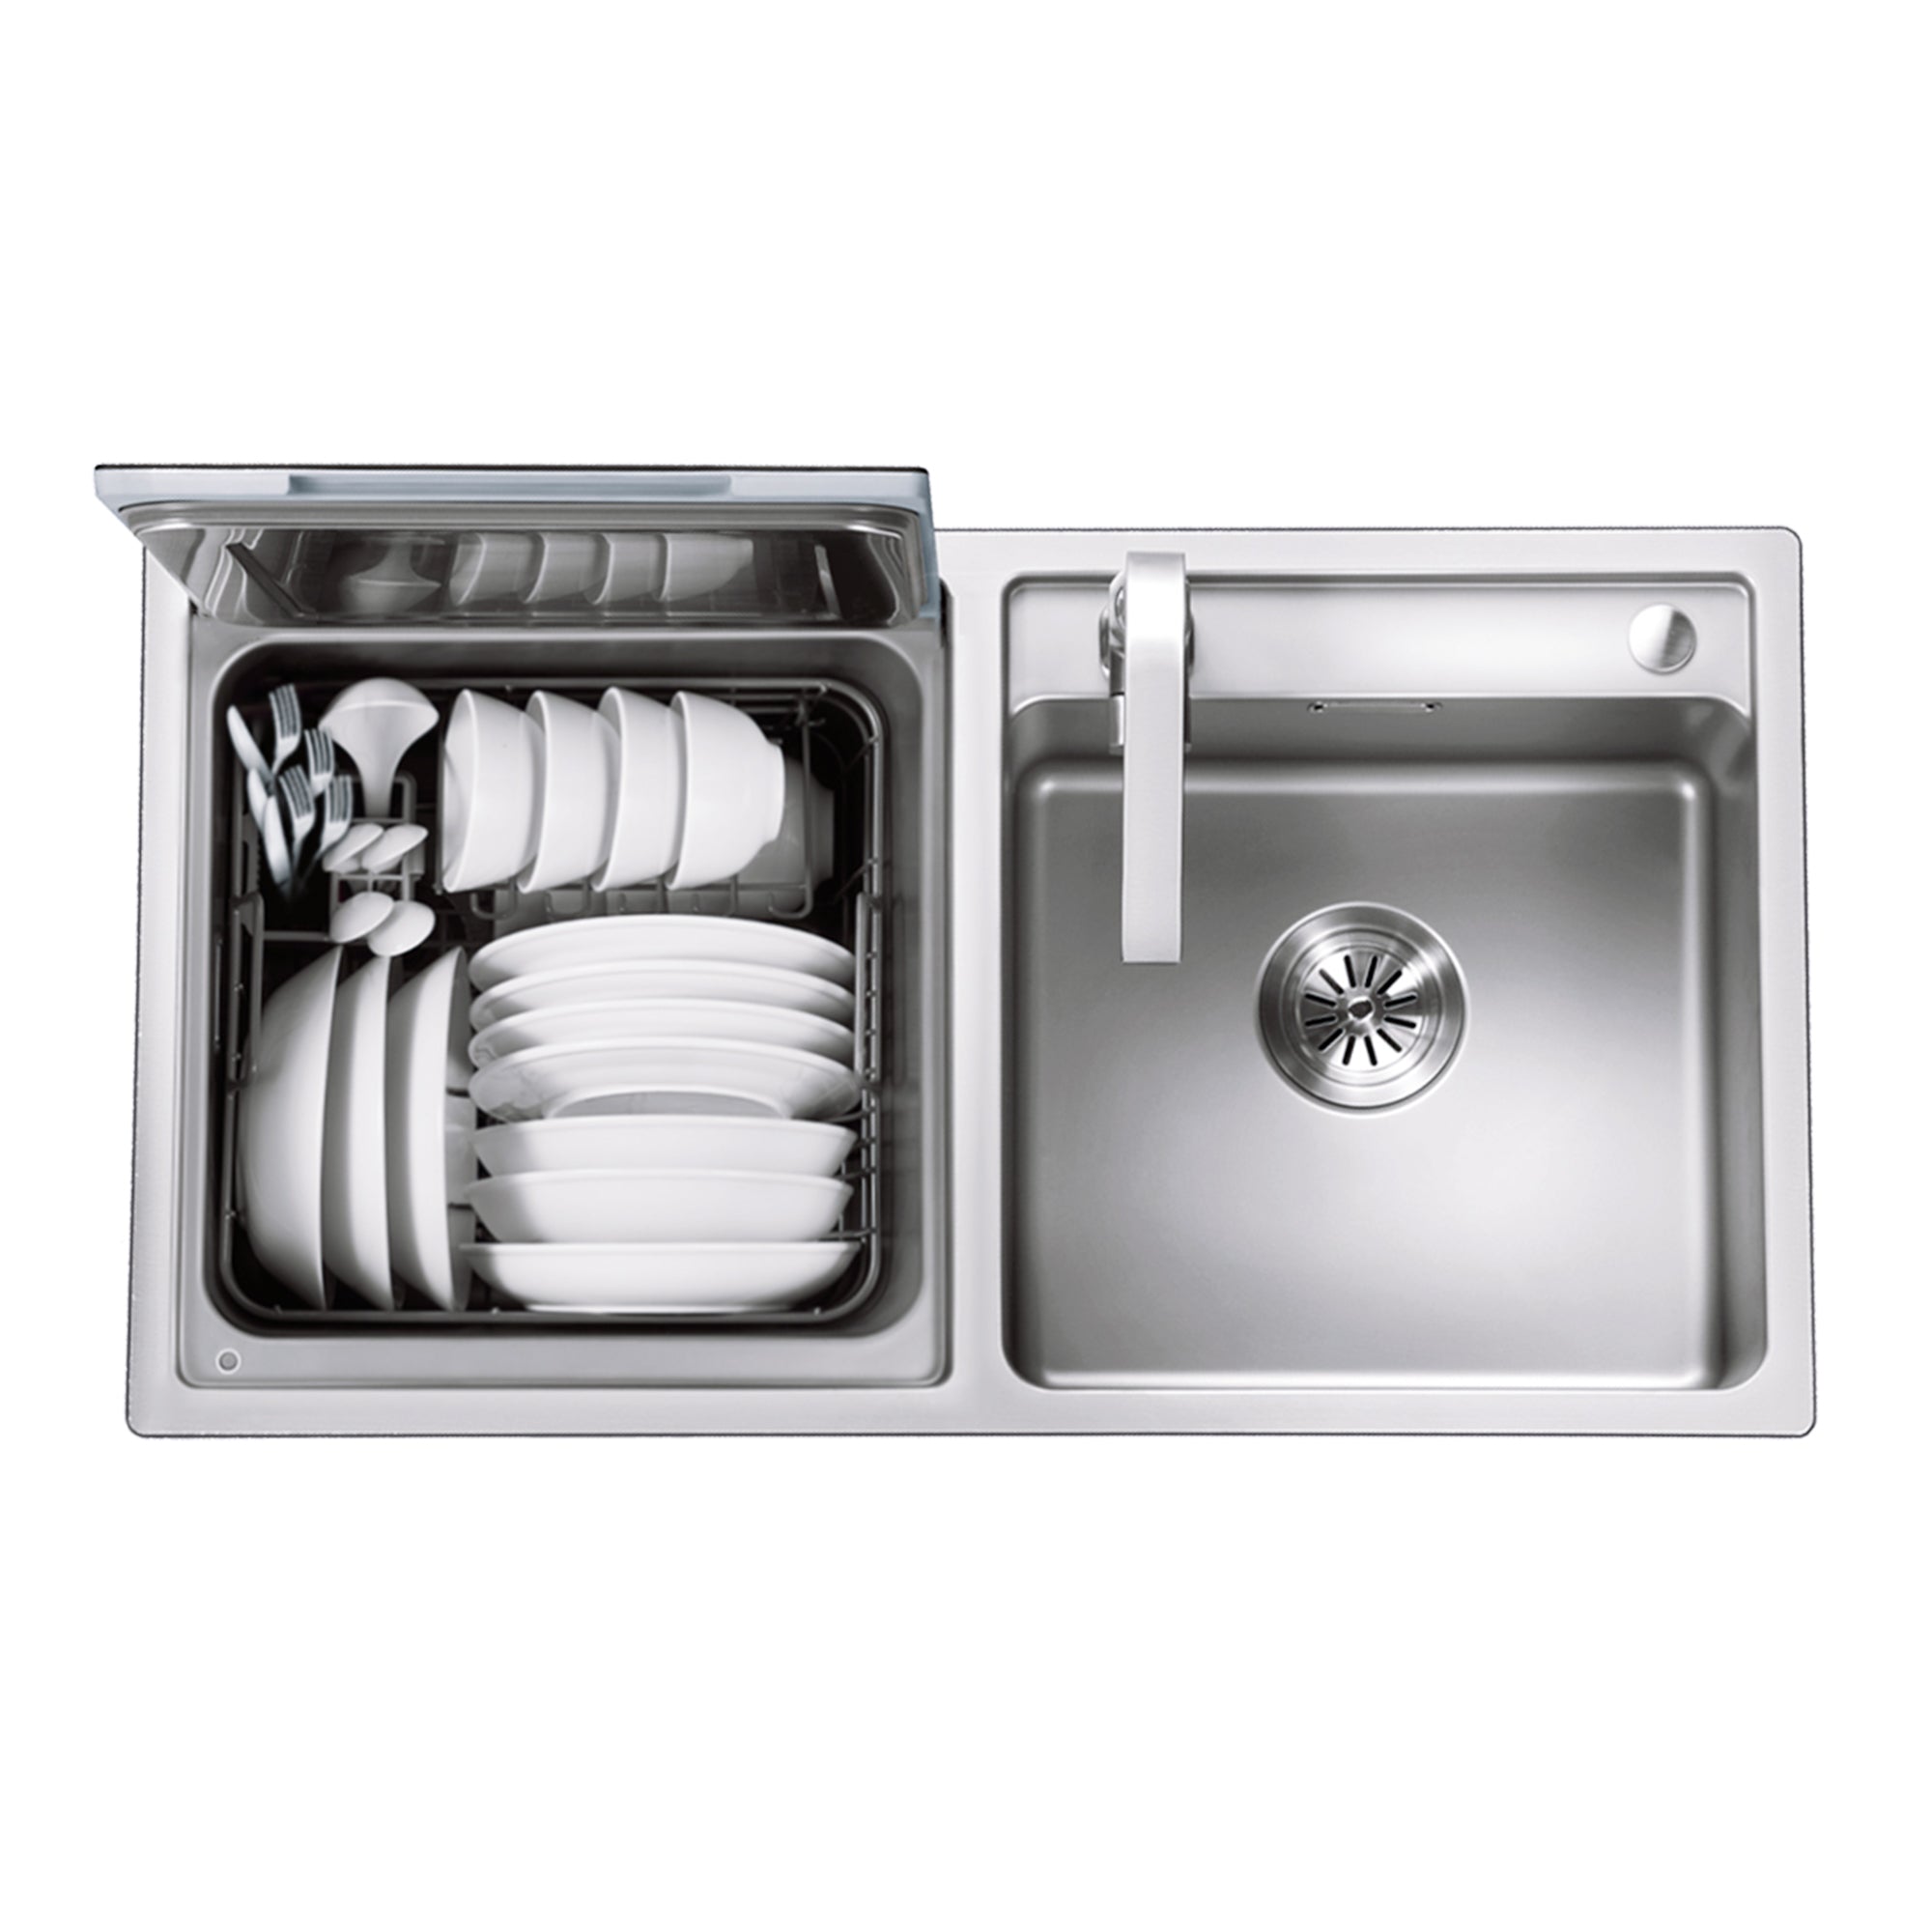 https://us.fotileglobal.com/cdn/shop/products/2-in-1-in-sink-dishwasher-578088.jpg?v=1697568001